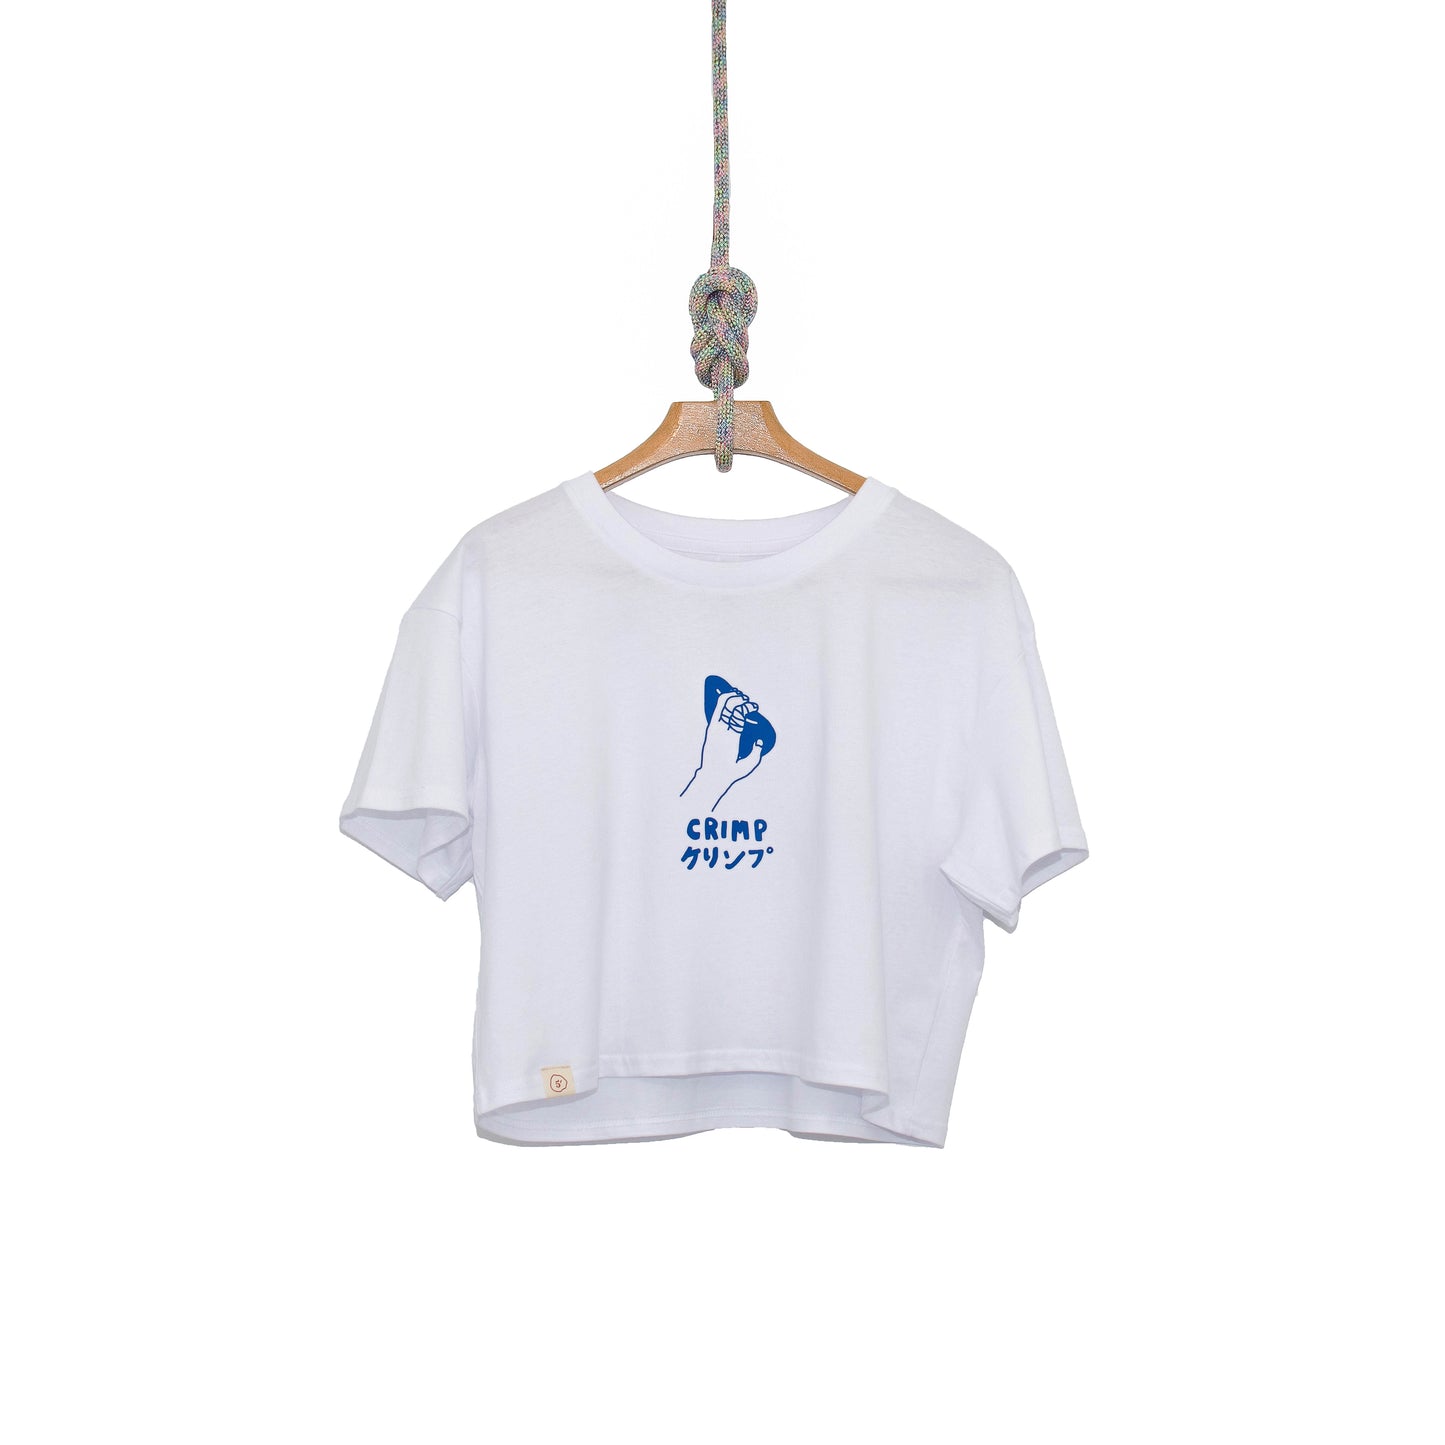 Crimp クリンプ (Kurinpu) Climbing Shirt - White (Crop)